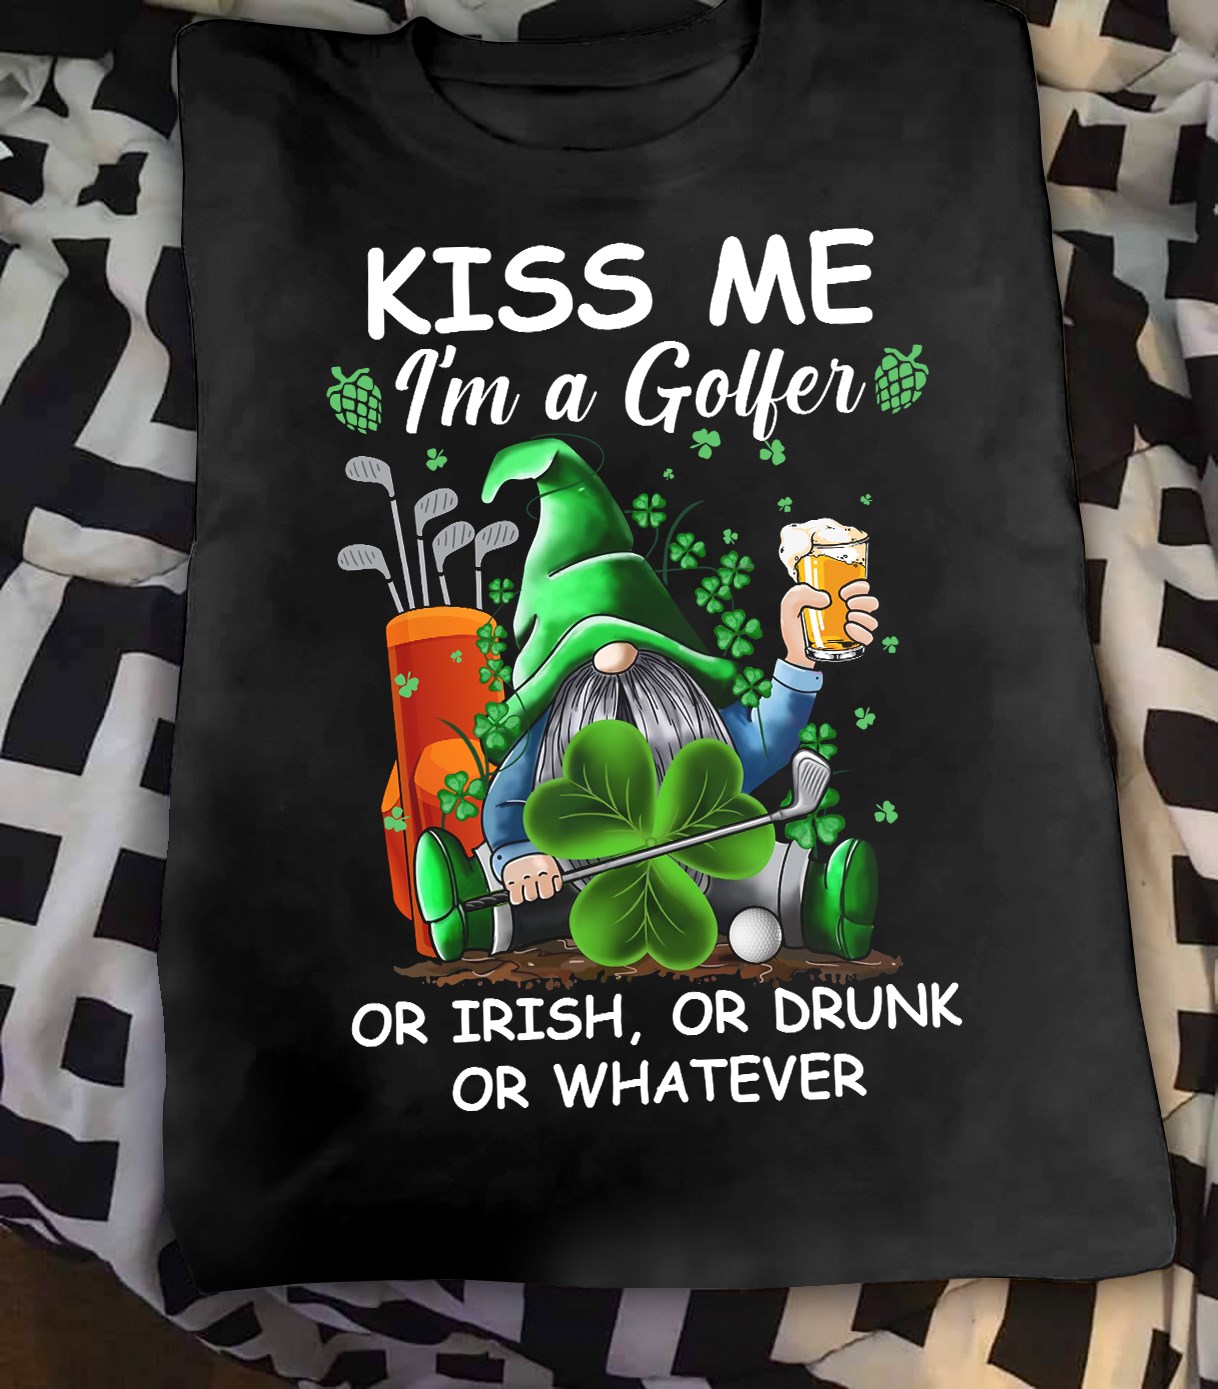 Kiss me I'm golfer or Irish, or drunk or whatever